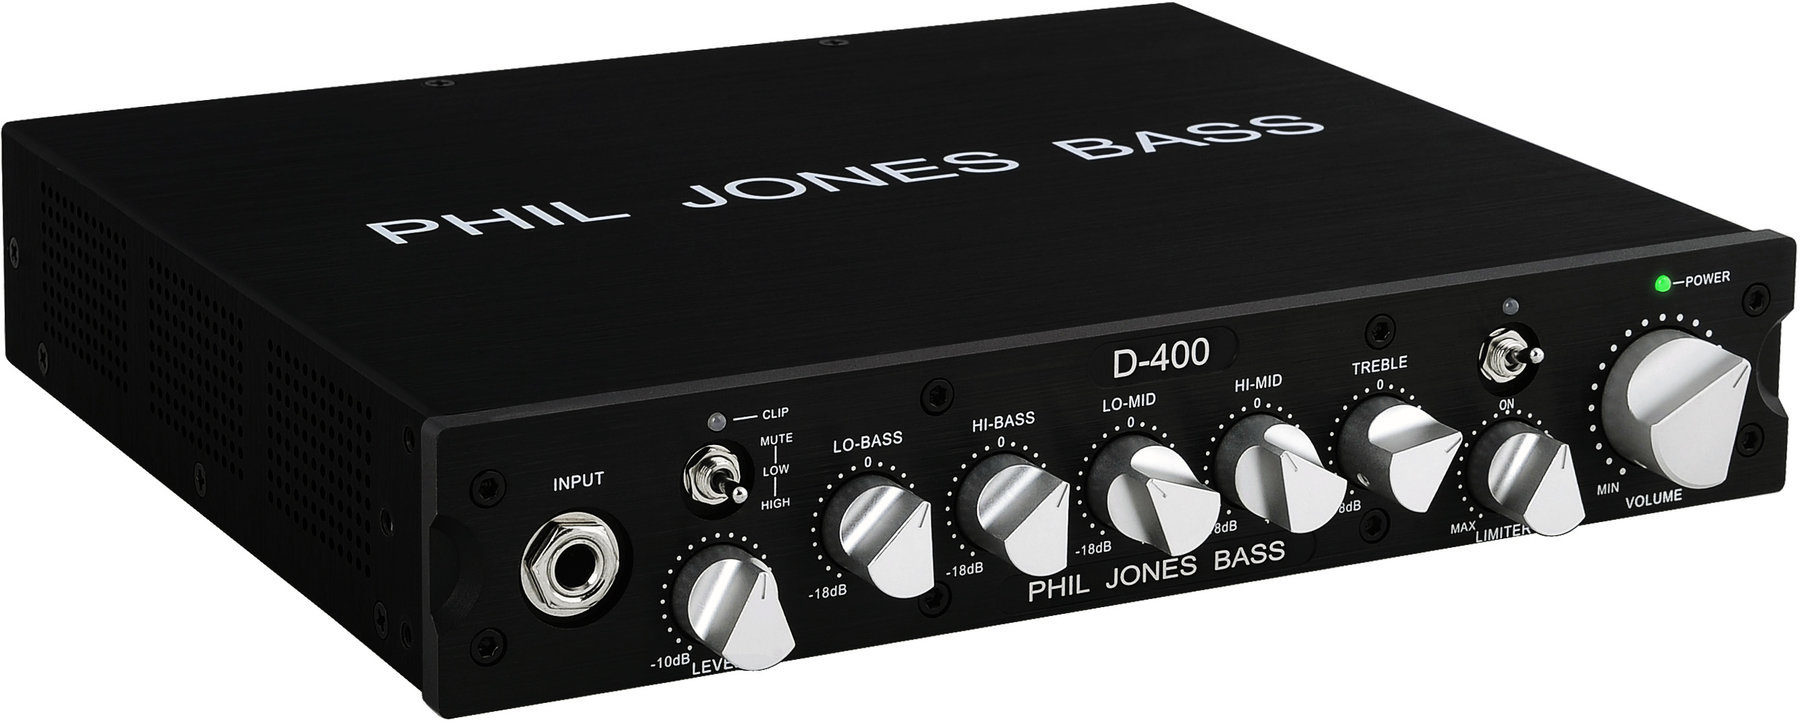 Phil Jones Bass D-400 Phil Jones Bass